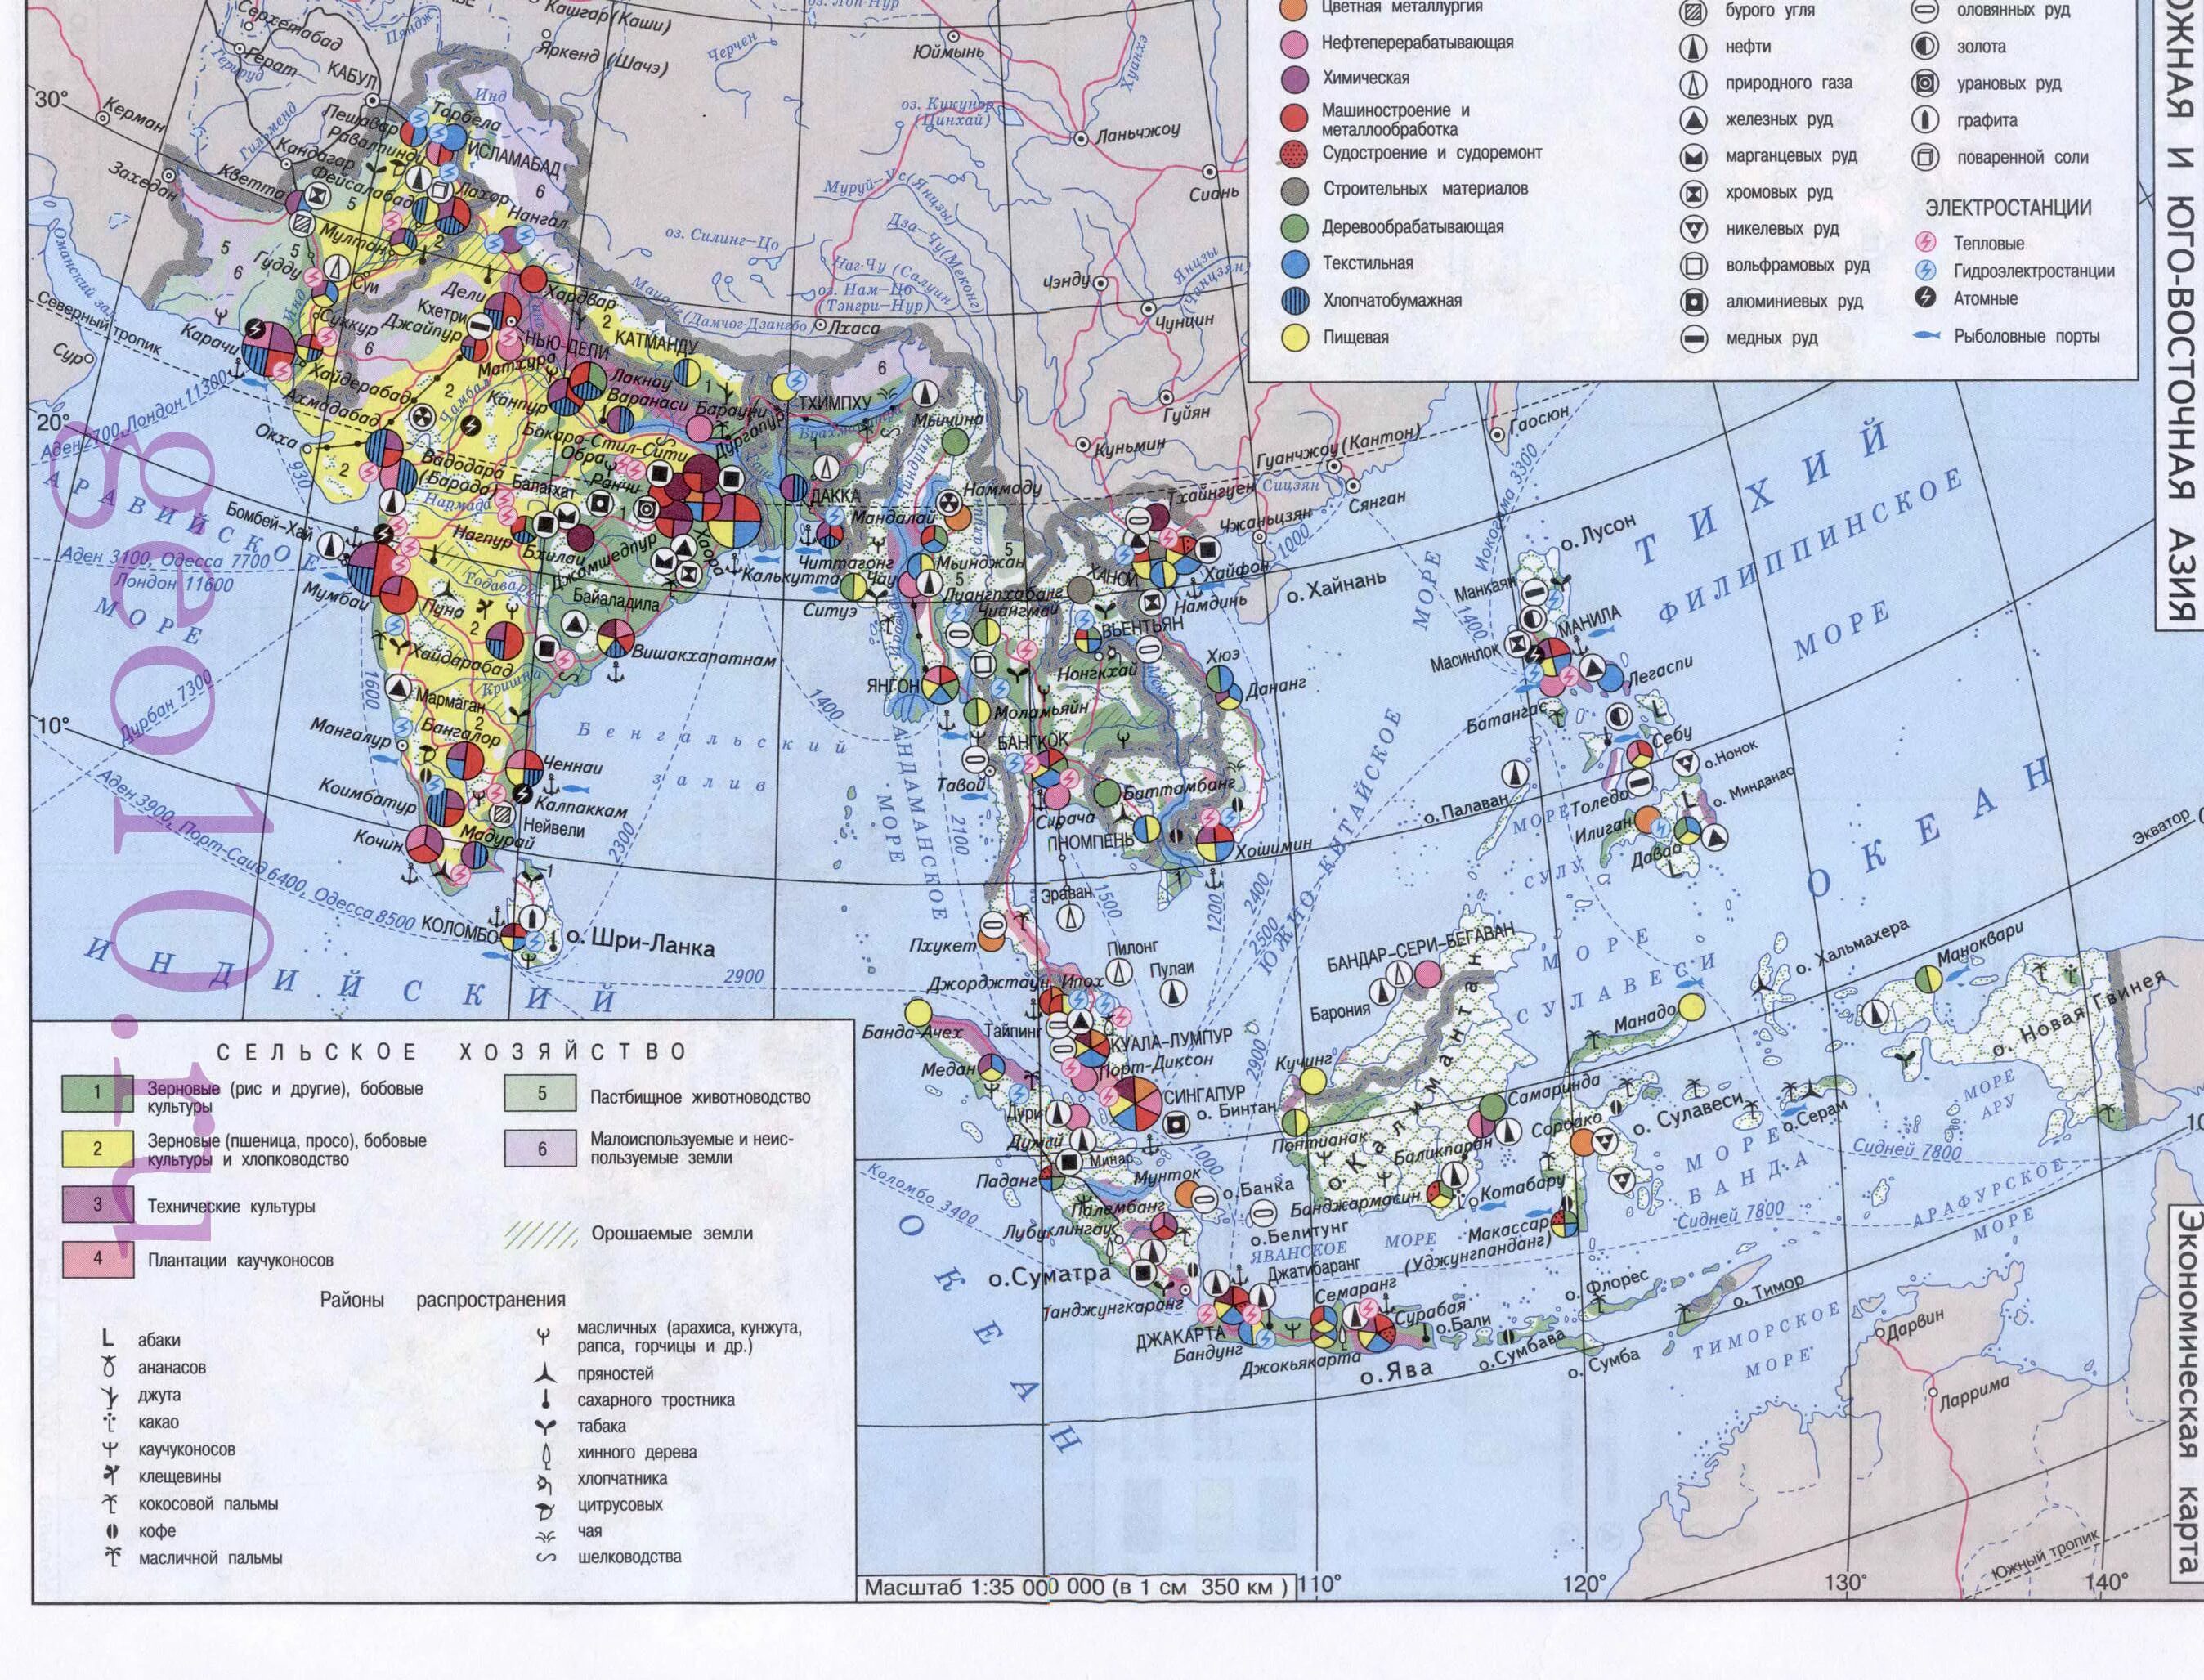 Руды зарубежной азии. Юго-Восточная Азия экономическая карта. Юго Восточная Азия промышленность карта. Сельское хозяйство Юго Восточной Азии карта. Крупнейшие промышленные центры зарубежной Азии карта.